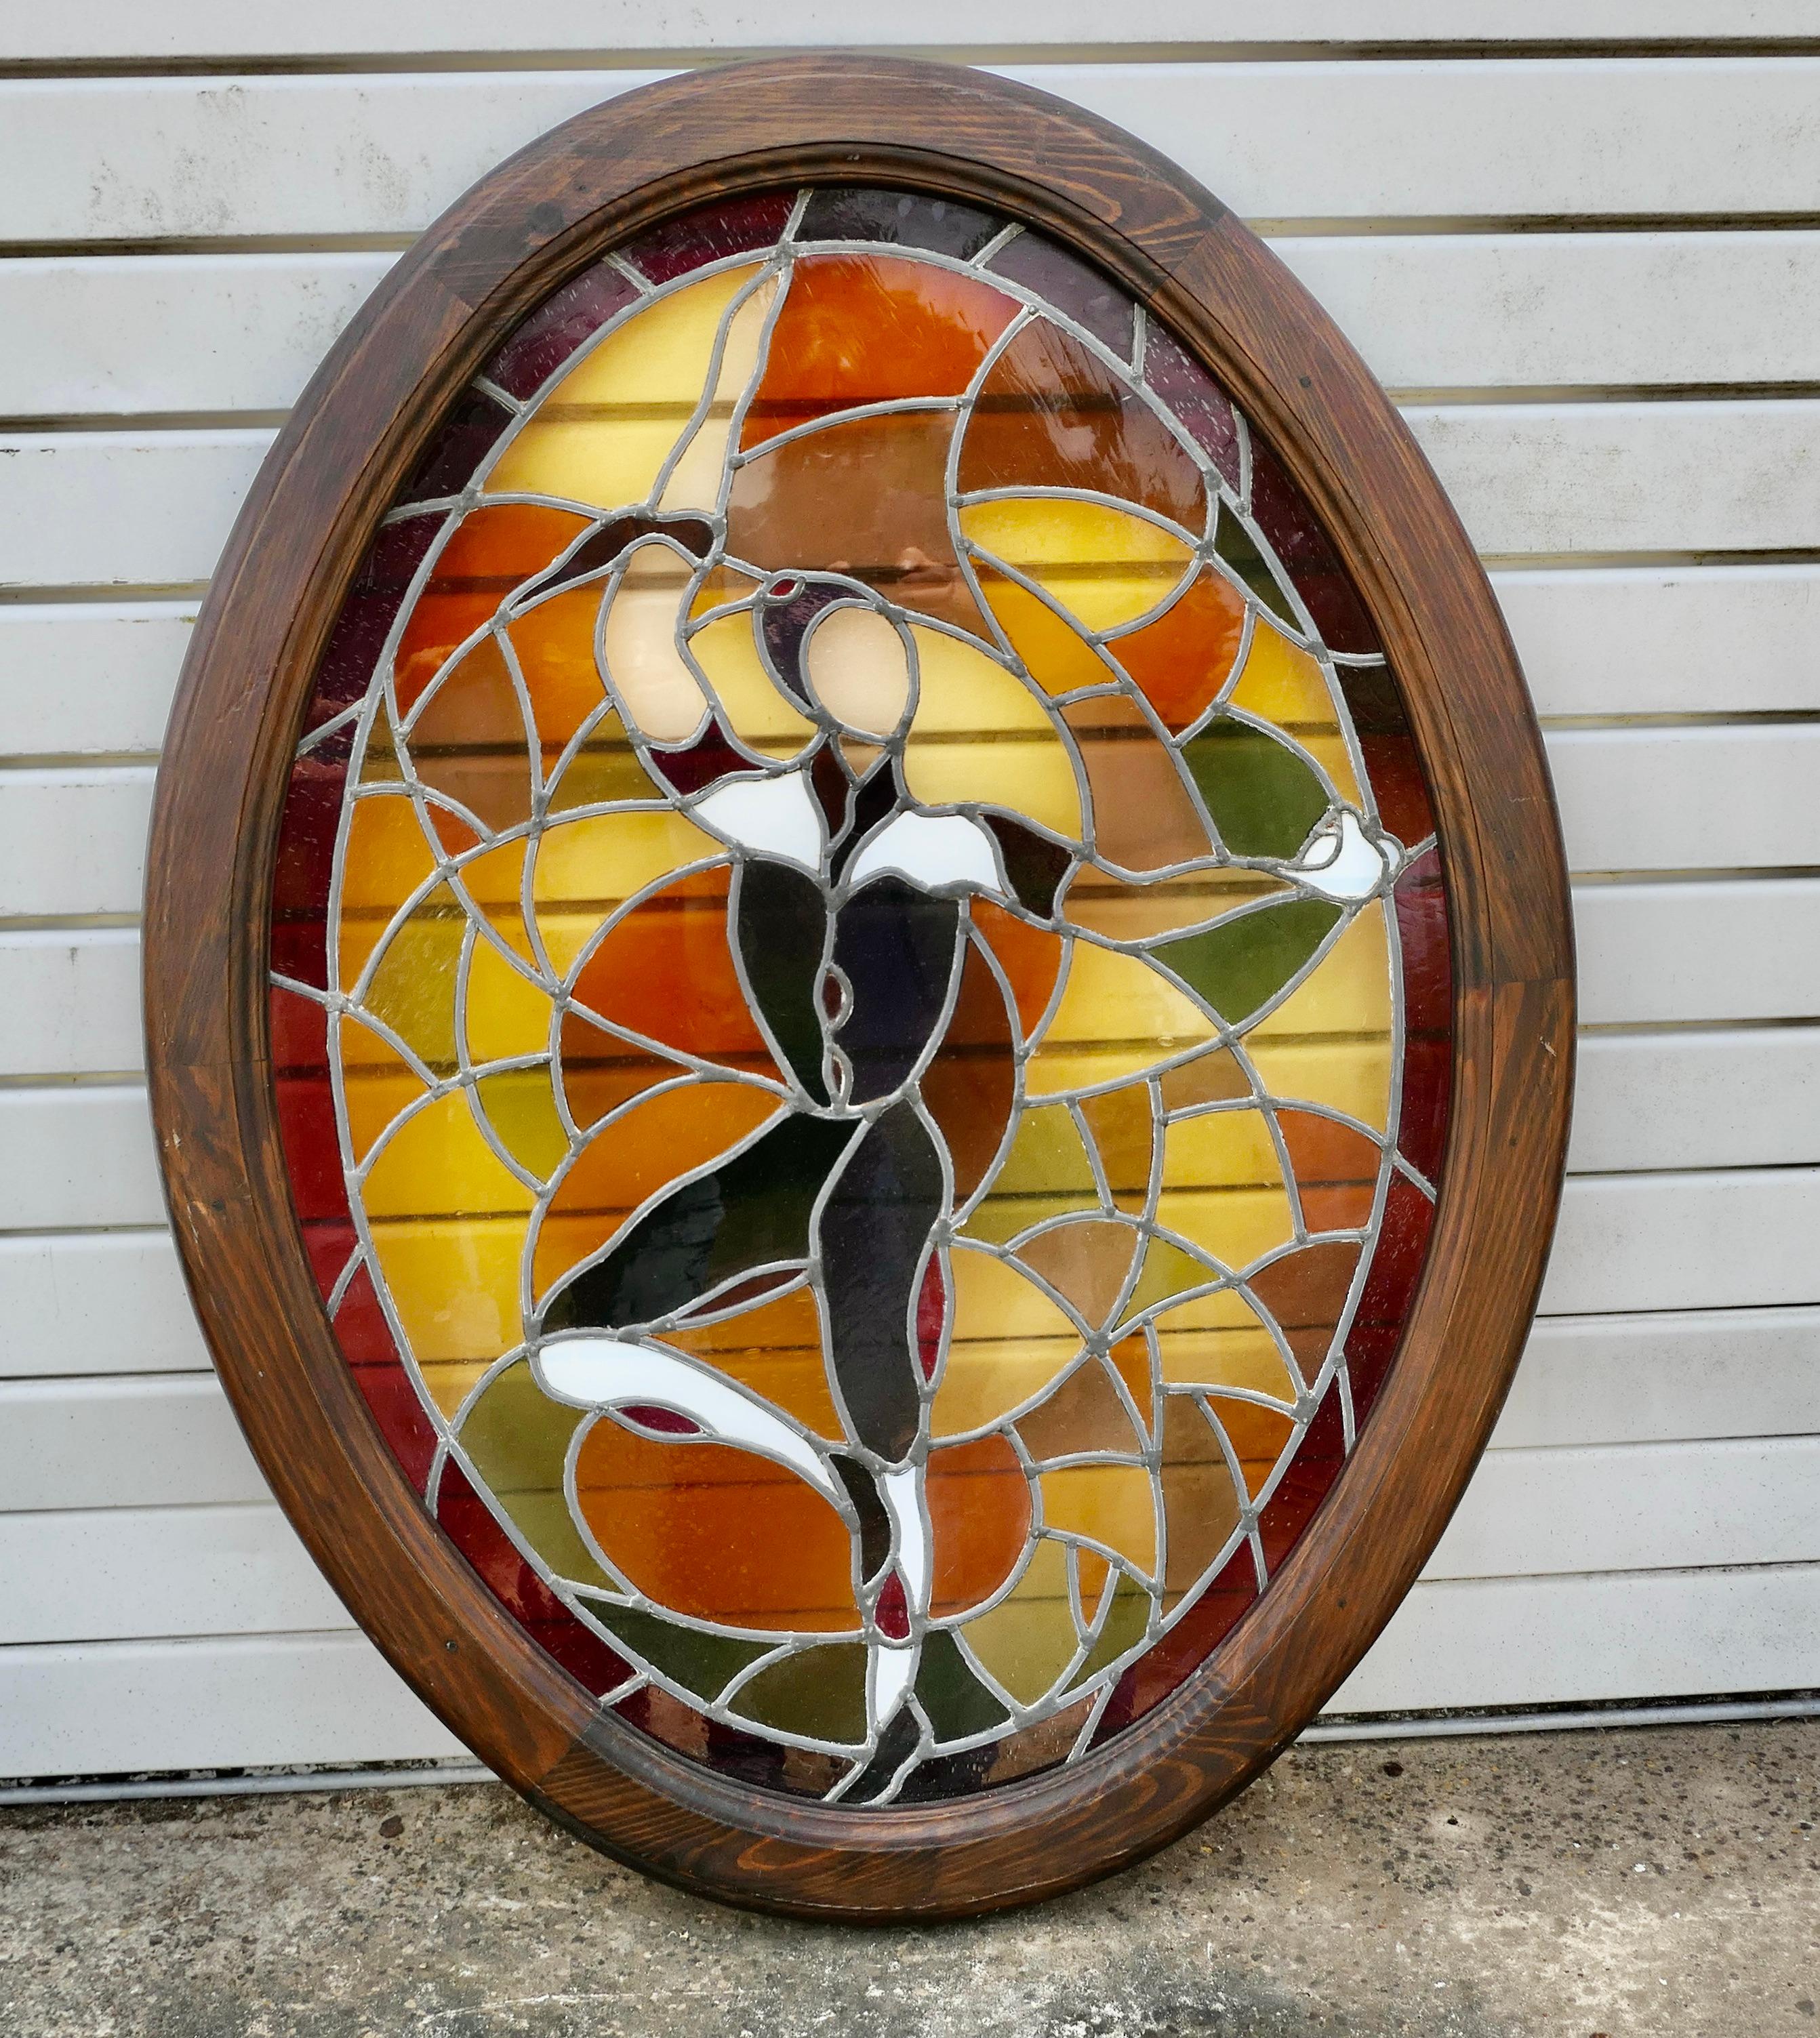 Große französische Art-Déco-Glasmalereiplatte für ein Fenster oder eine Tür

Dies ist ein schönes Stück, es hat sehr attraktive Bleiverglasung in schönen Herbstfarben mit einem hübschen Tänzer in der Mitte gesetzt
Das Glas wurde in eine ovale solide